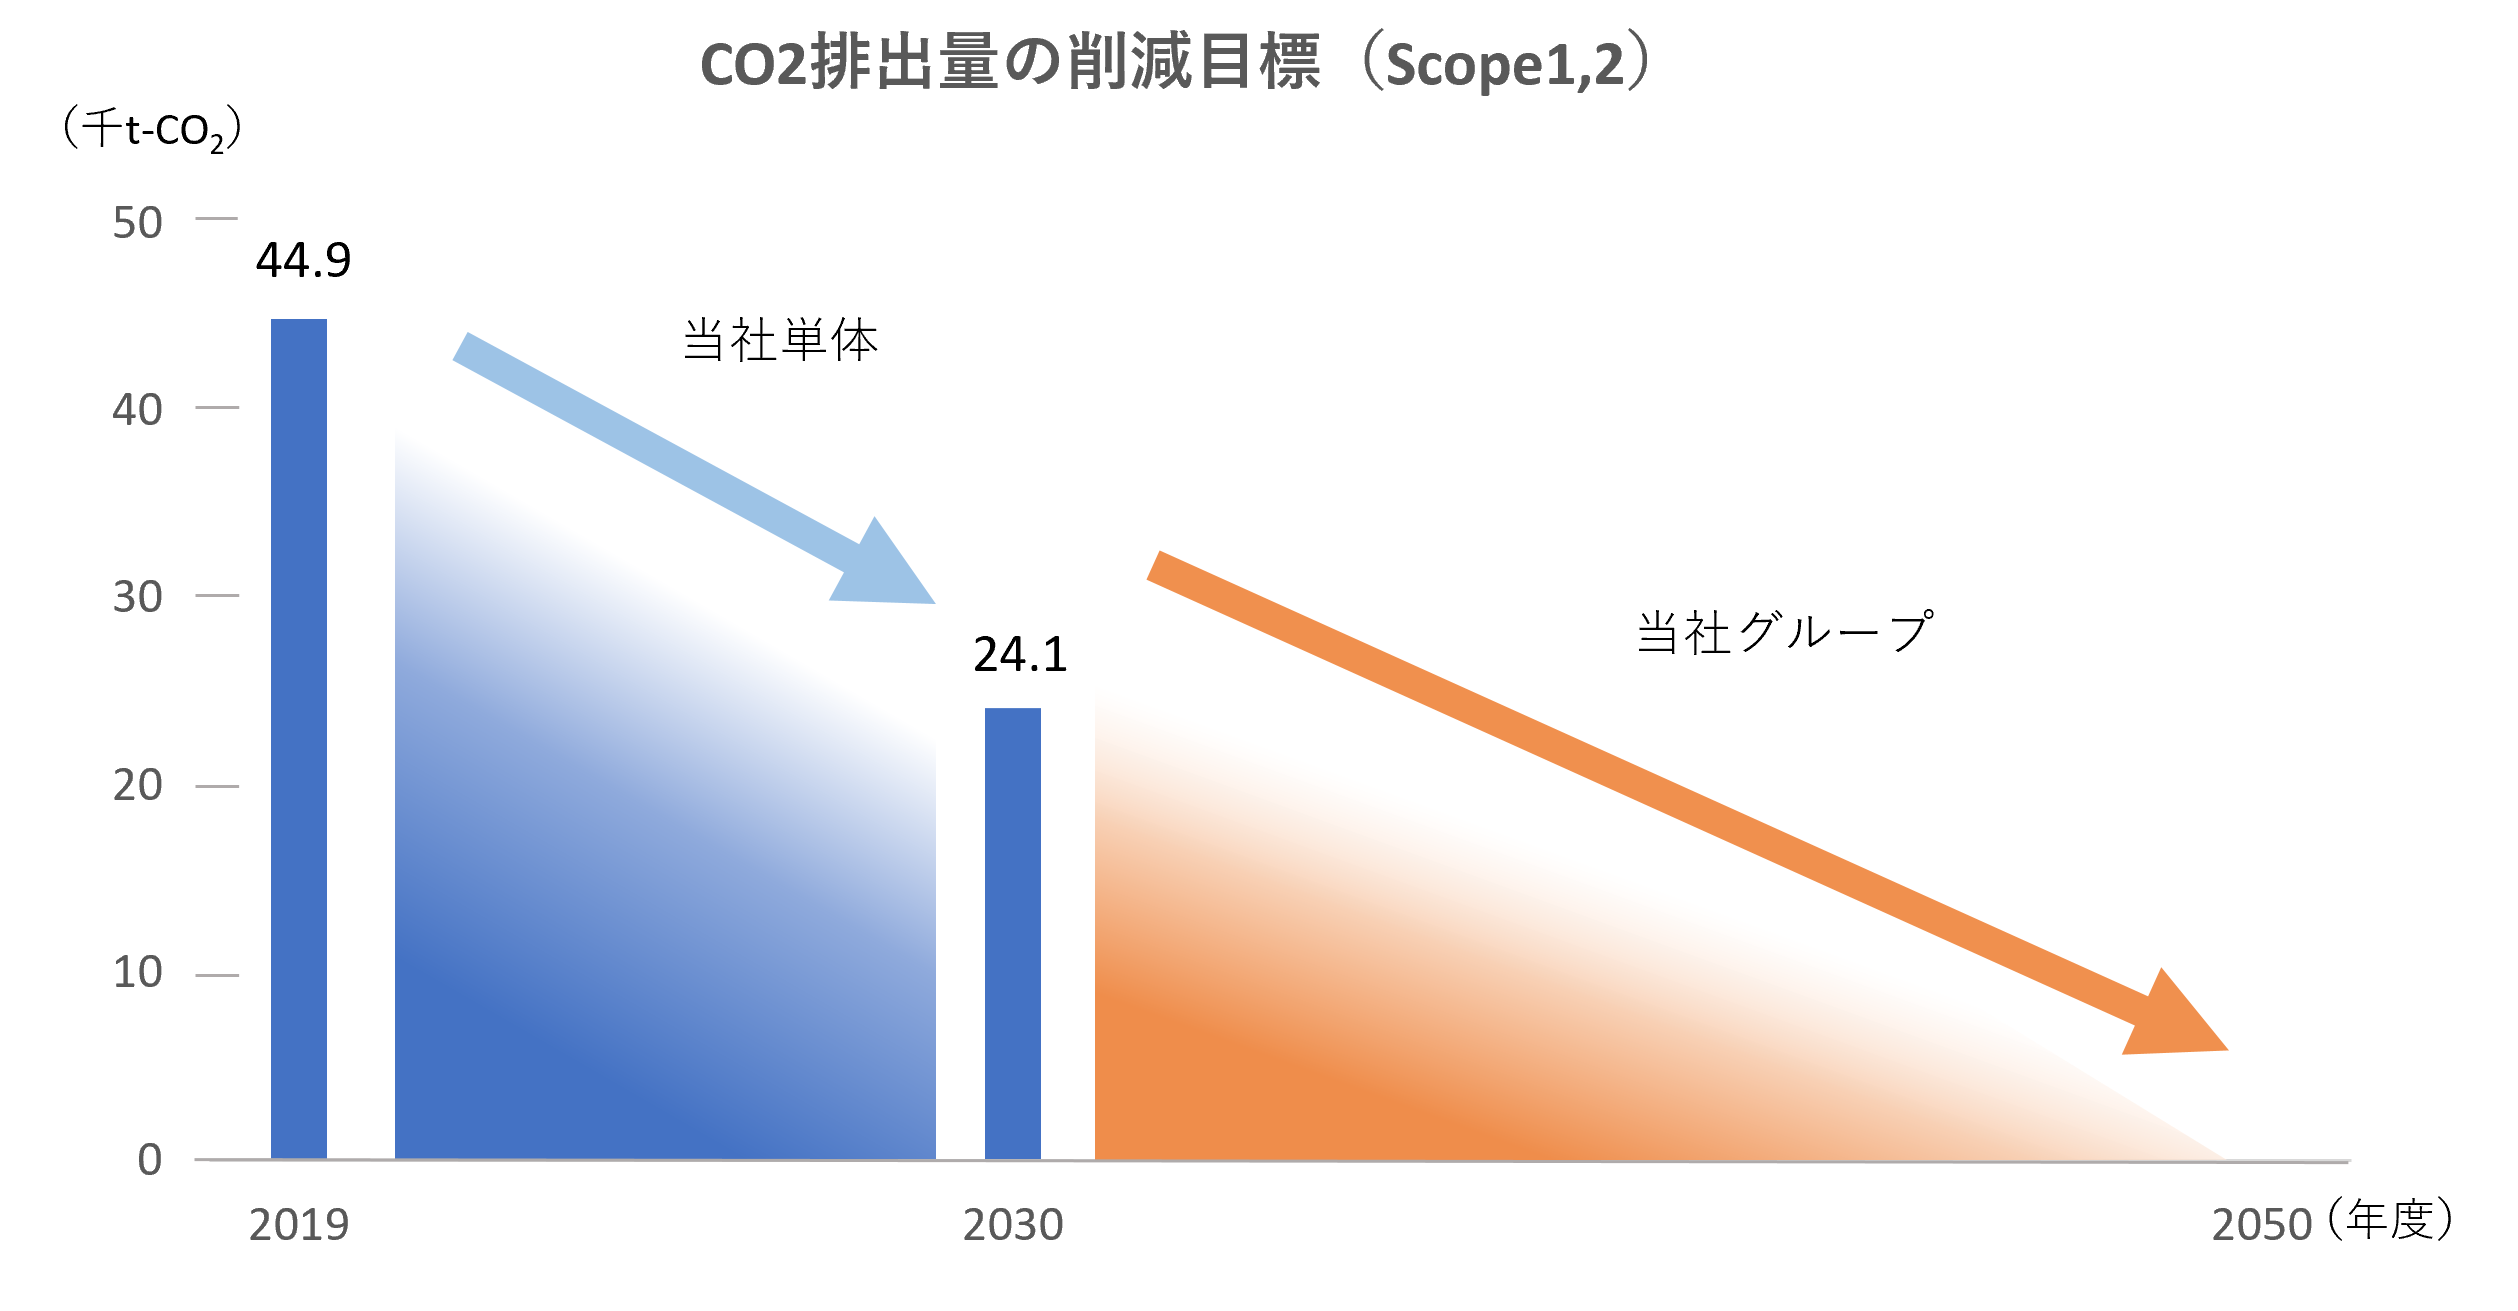 リケンテクノスグループの中長期CO排出量の削減目標